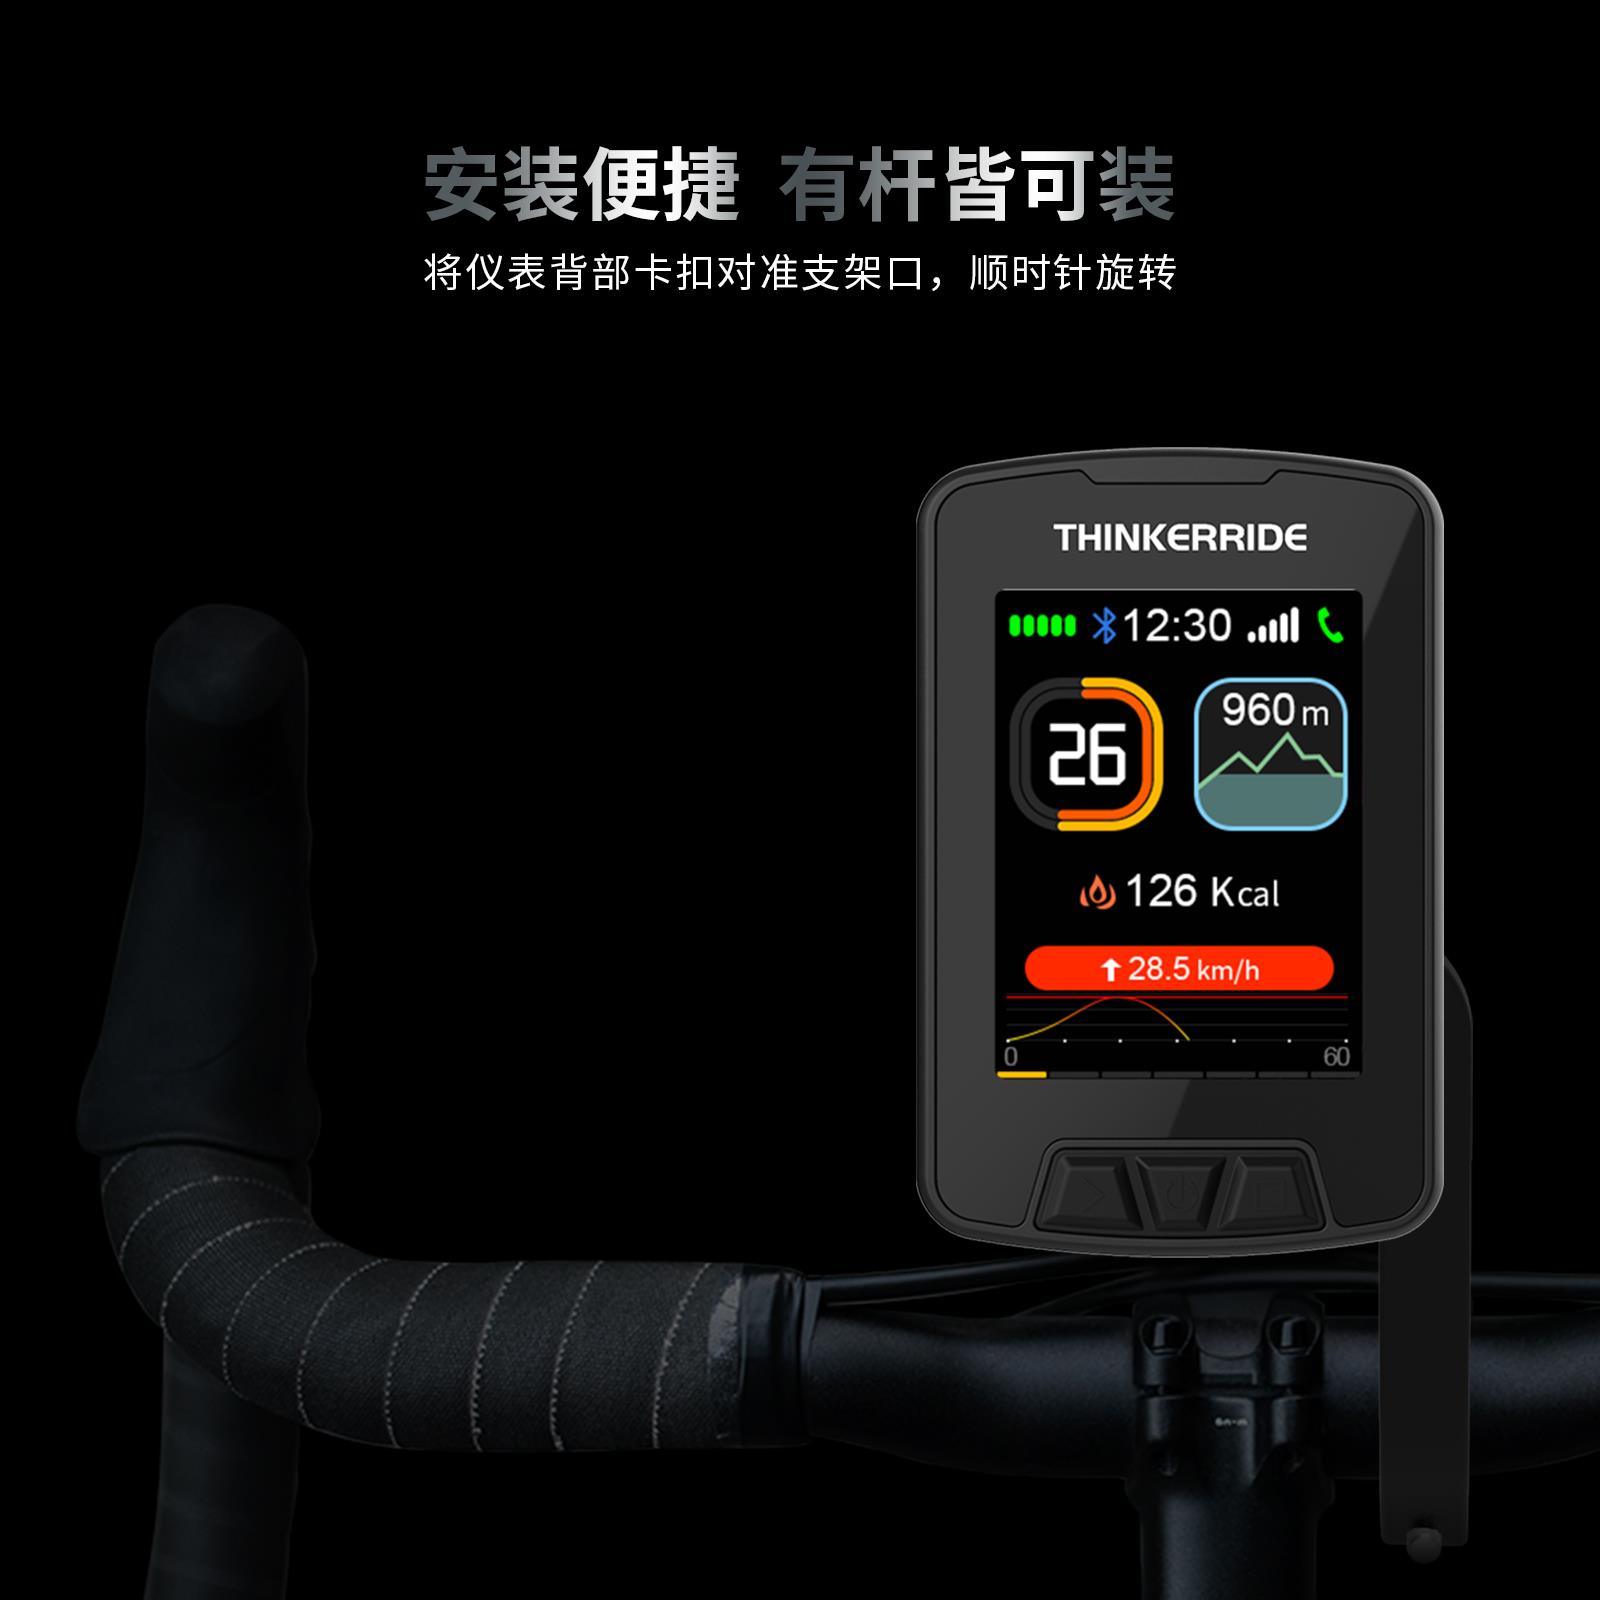 思骑自行车便携互联导航仪3.5